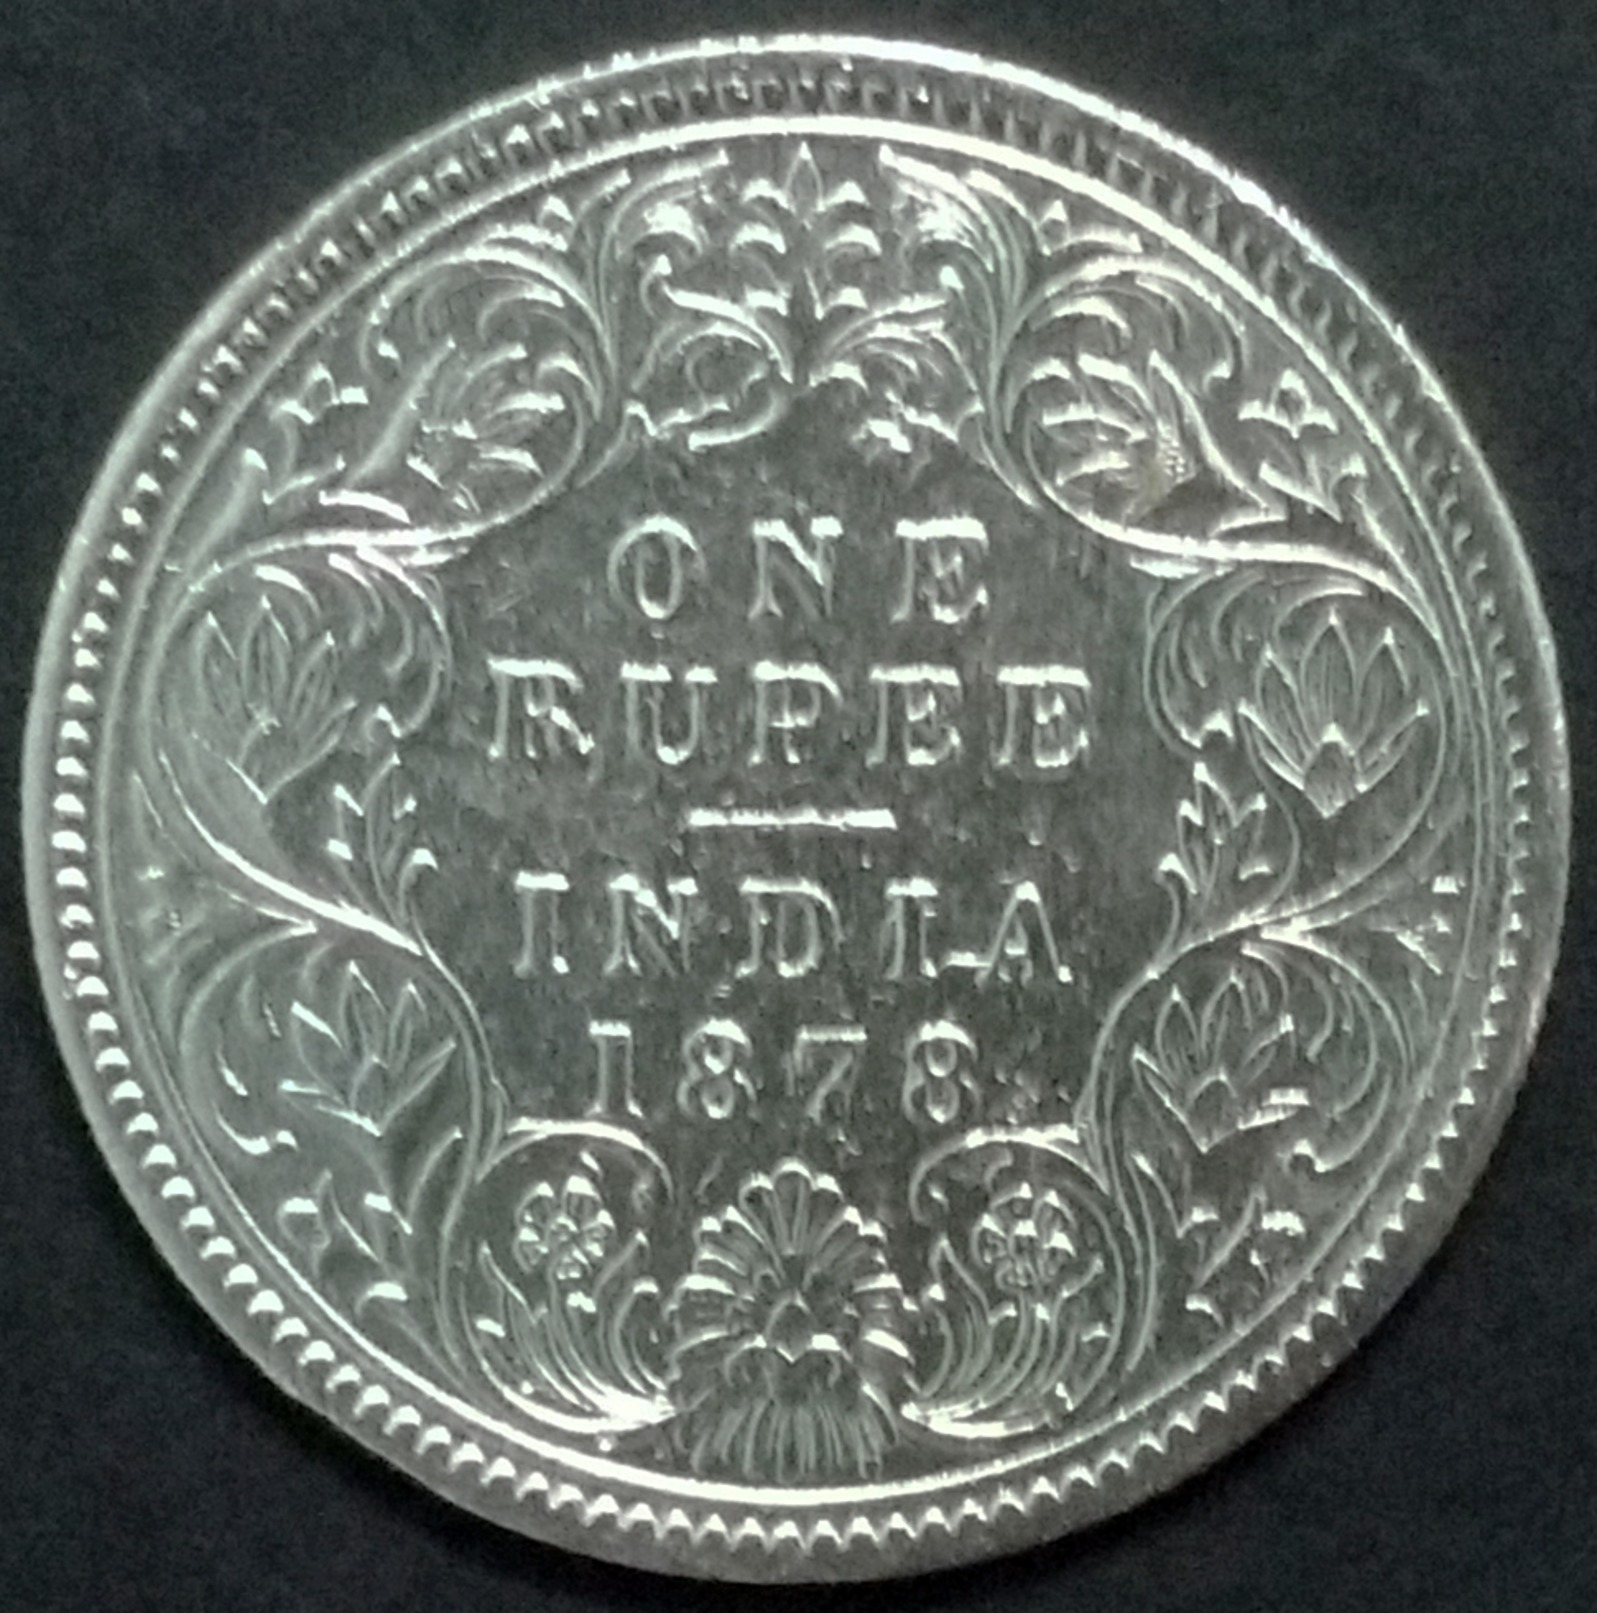 INDIA COIN, BRITISH PERIOD, ONE RUPEE 1878 SILVER, QUEEN VICTORIA, VERY FINE - India